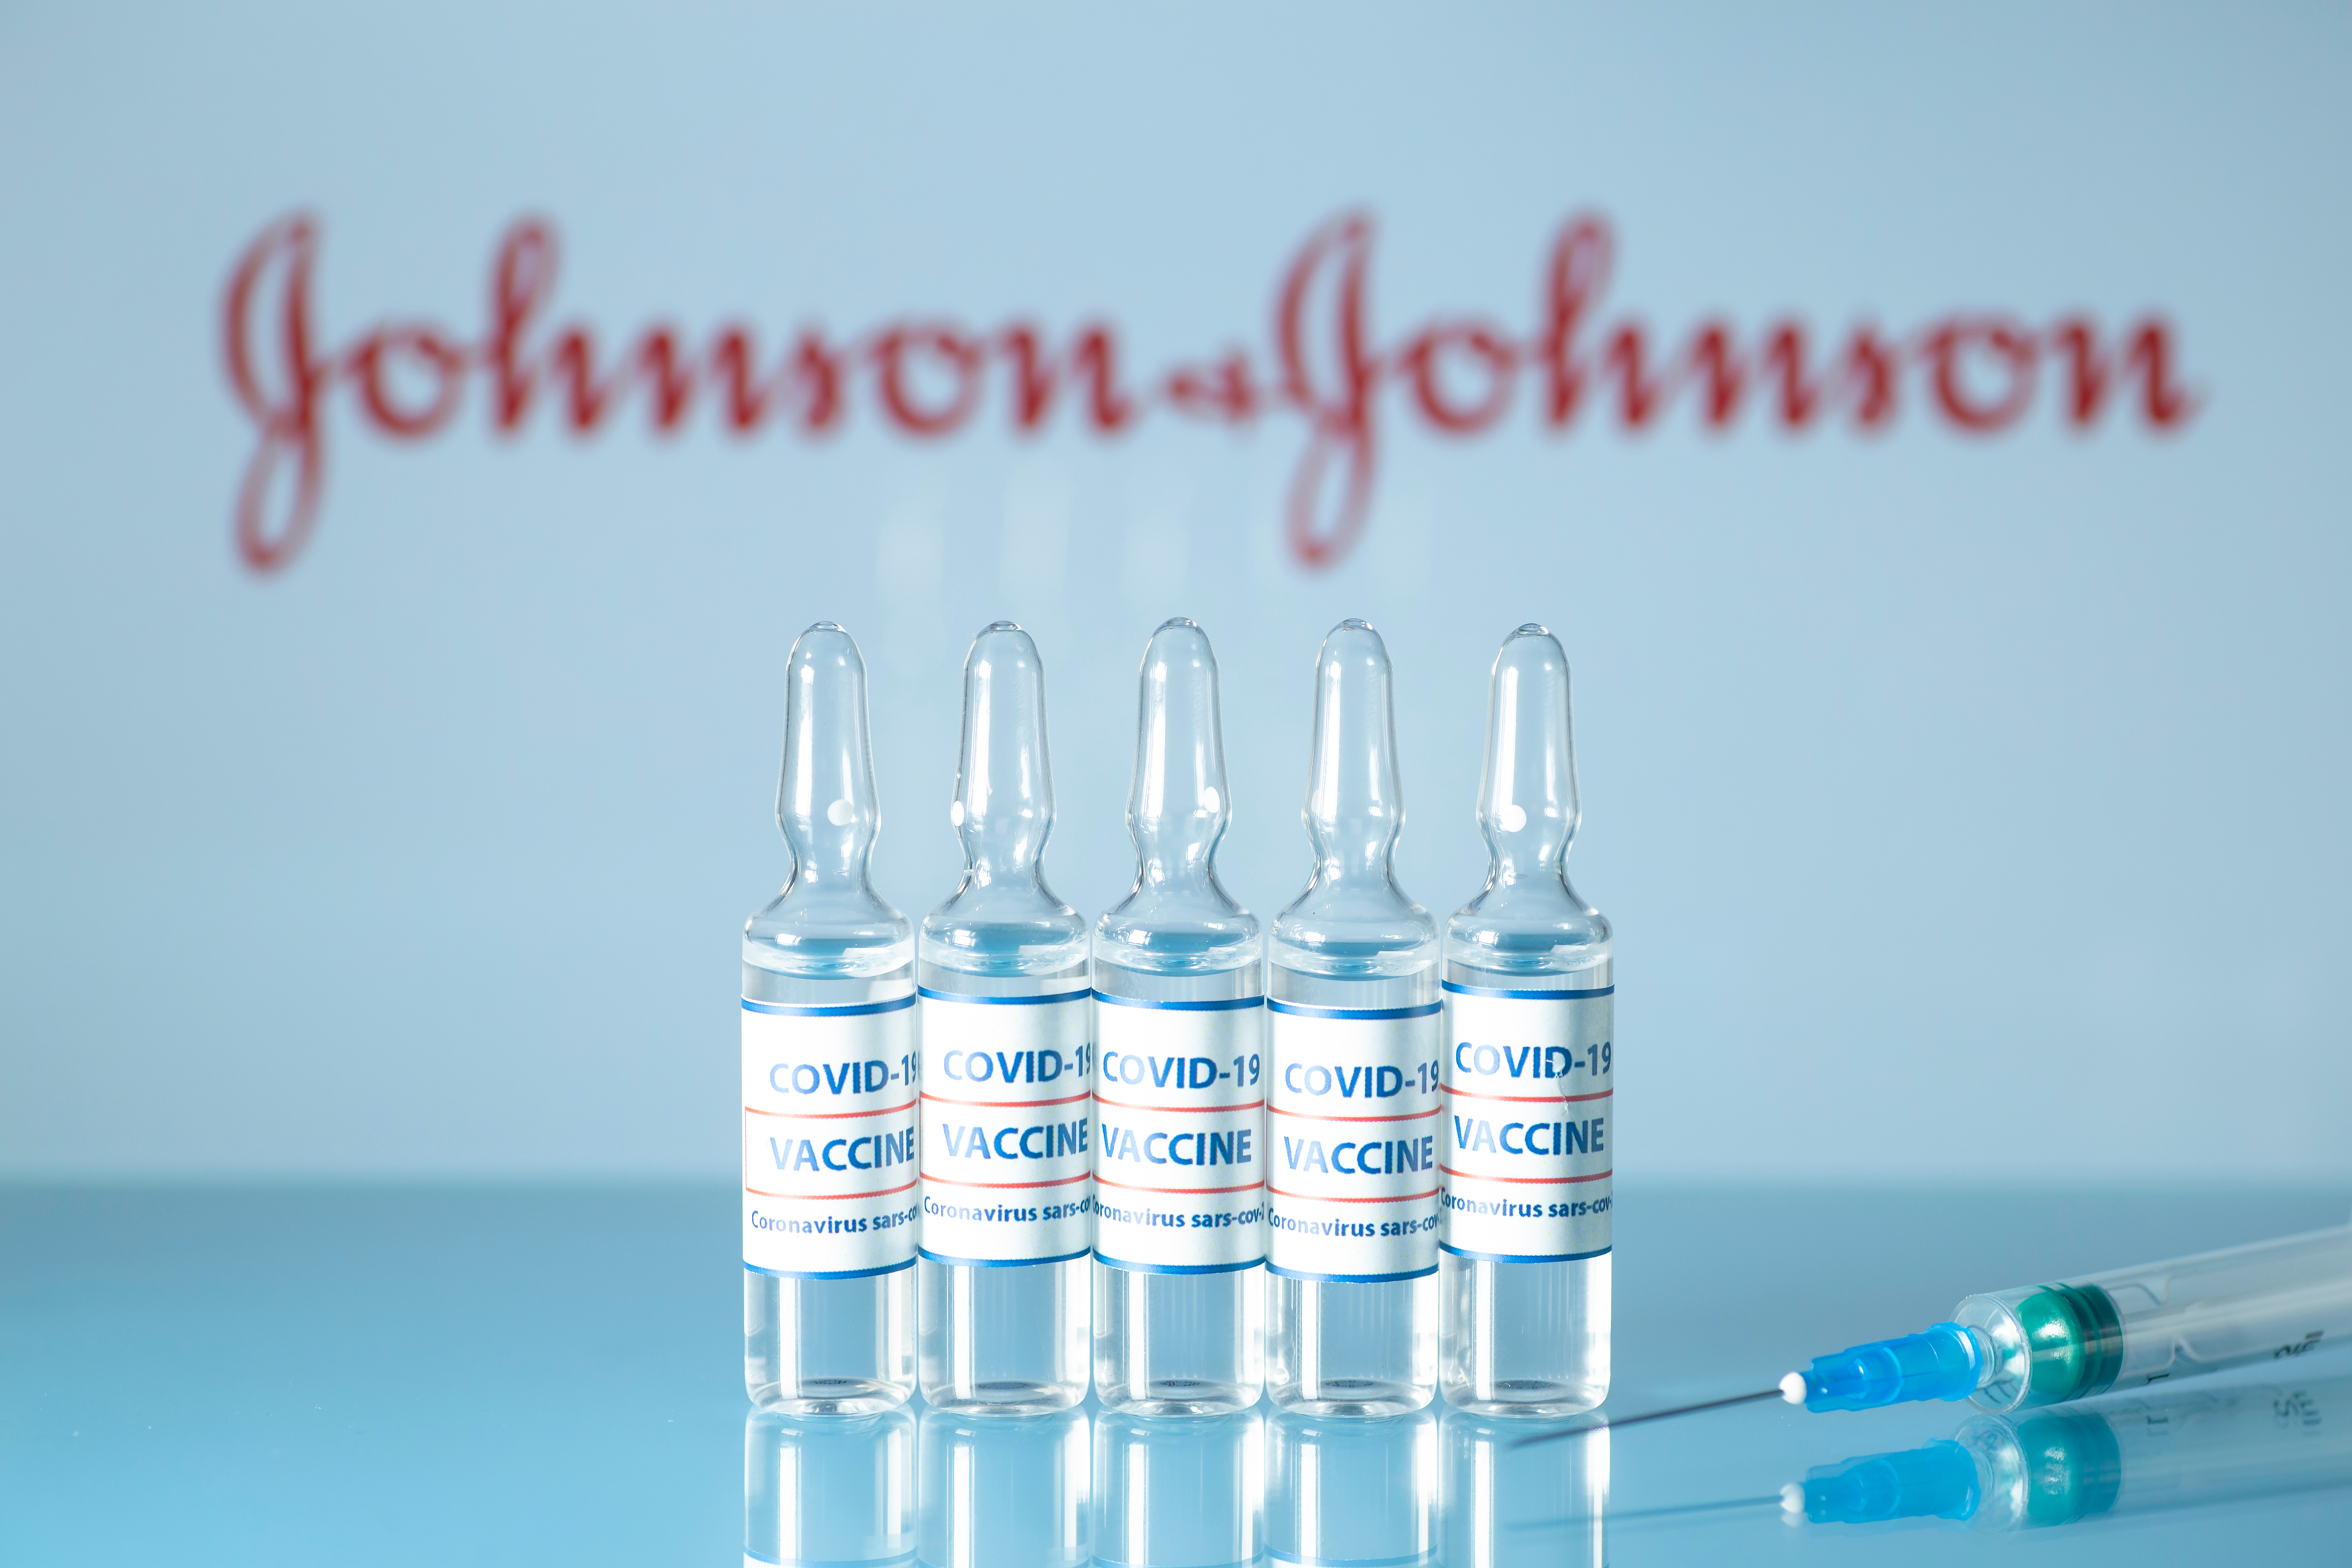 Statele Unite au autorizat vaccinul împotriva Covid-19 produs de Johnson & Johnson